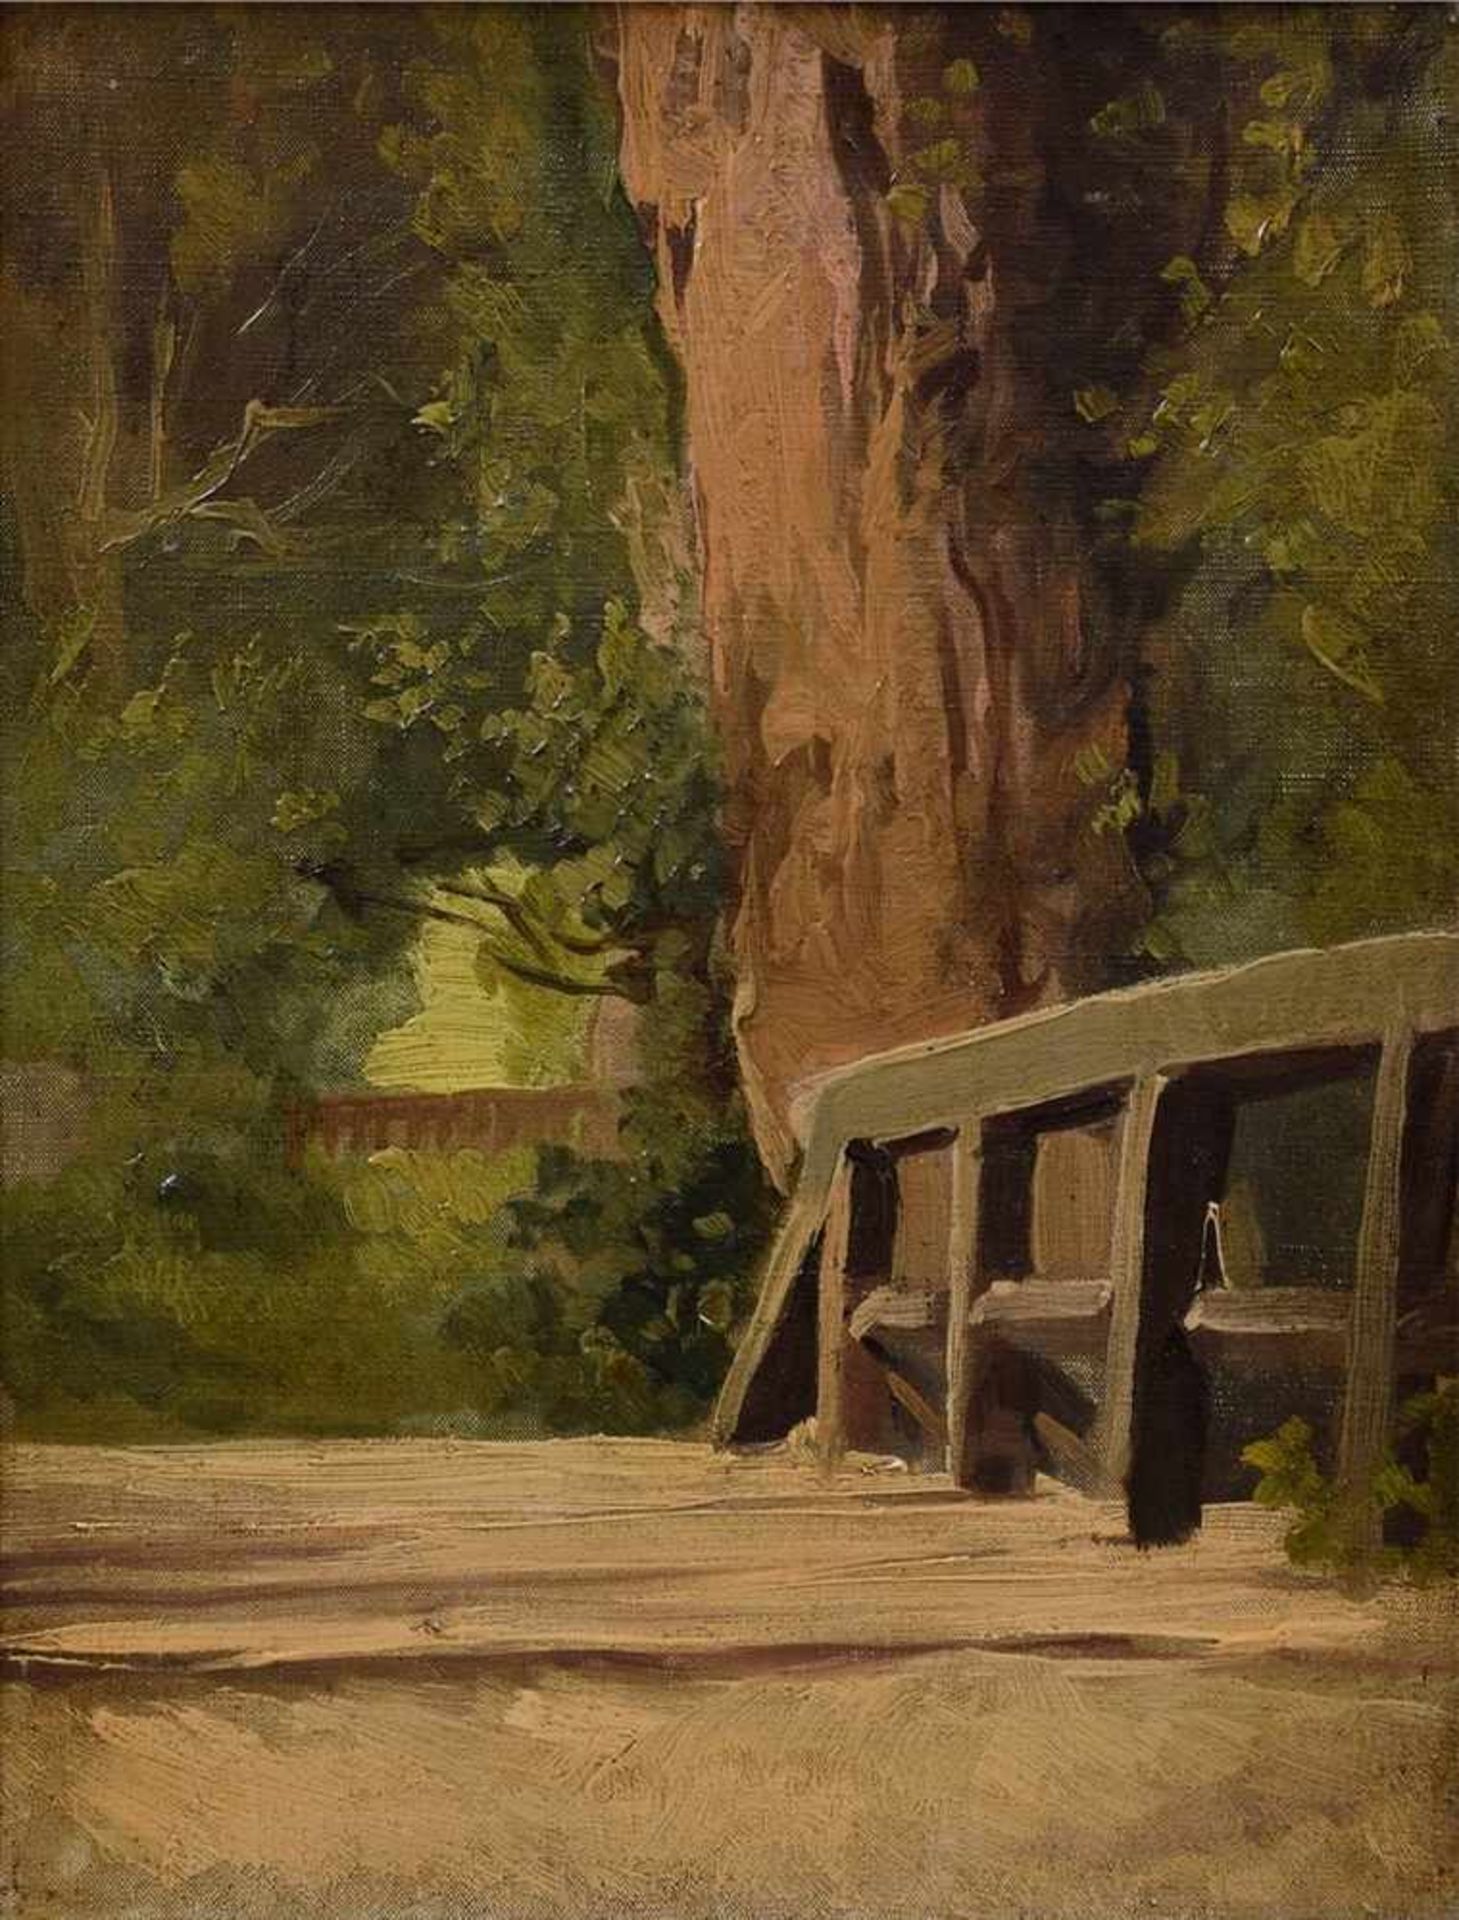 Landschaftsmaler des 19.Jh. "Brücke und Bäume", Öl/Leinwand, 35x27cm (m.R. 42x34cm)19th century